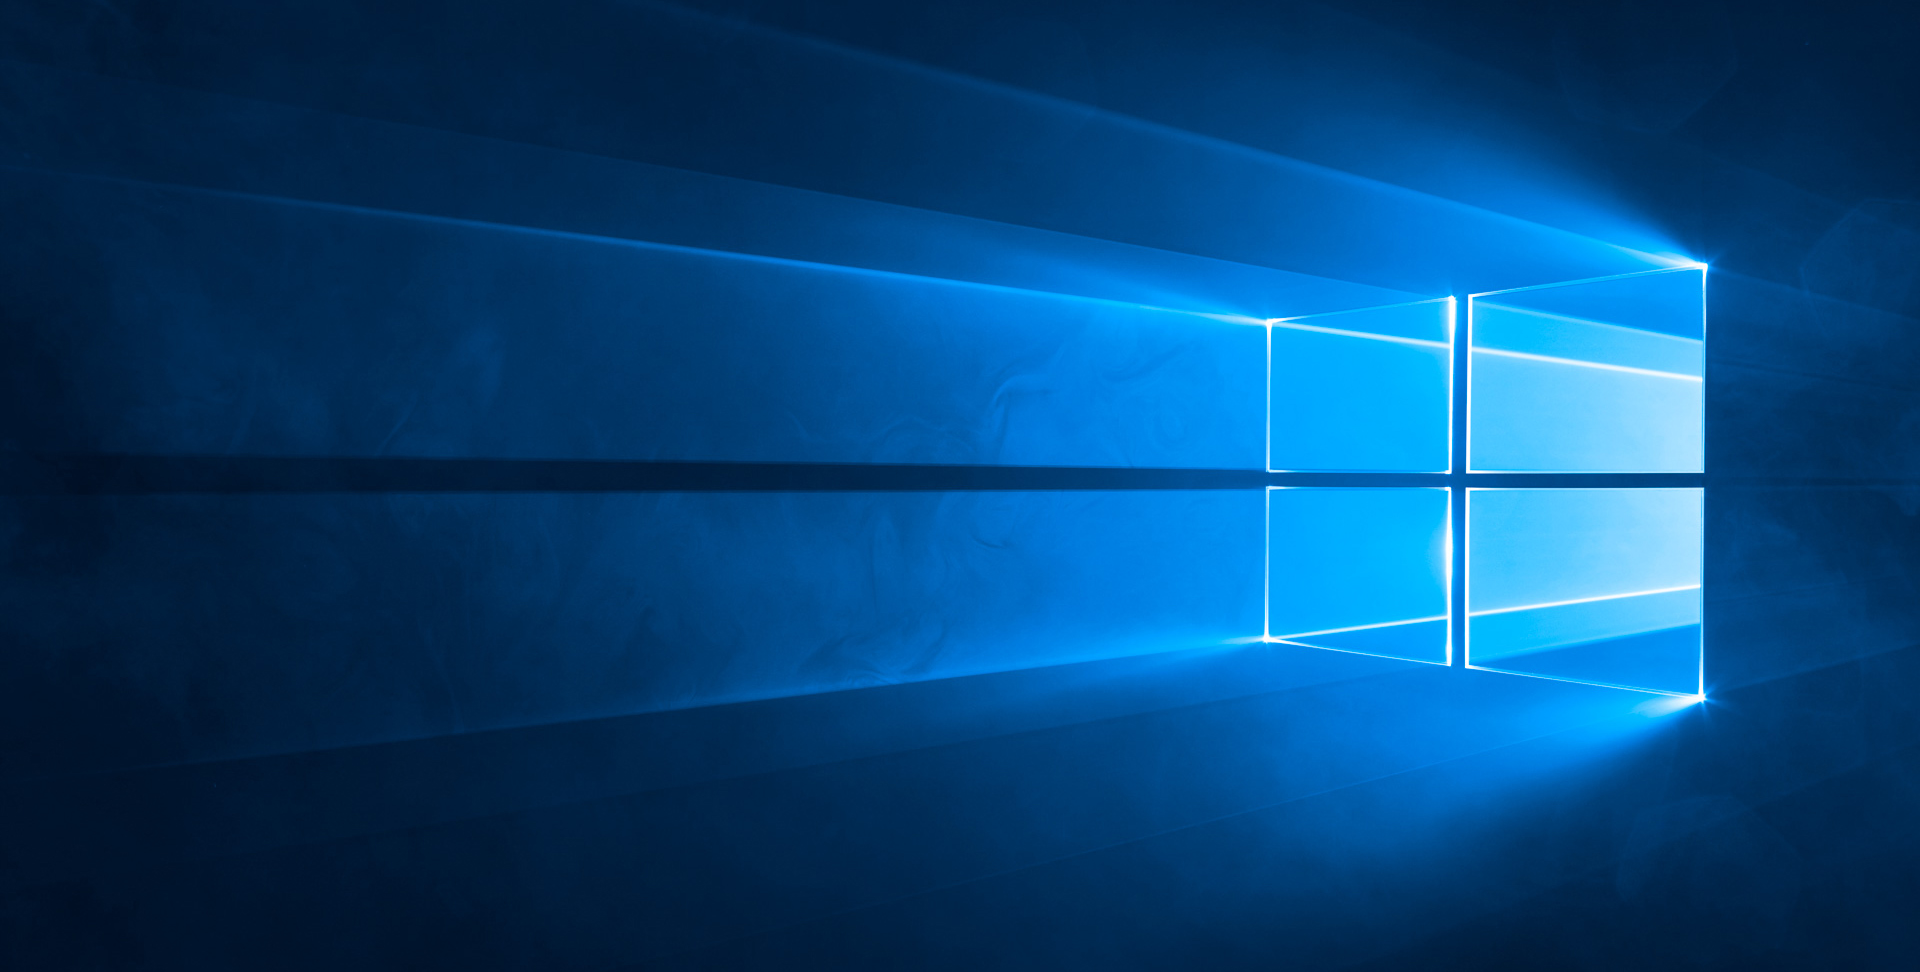 Windows 10 perangkat diluncurkan 4 September